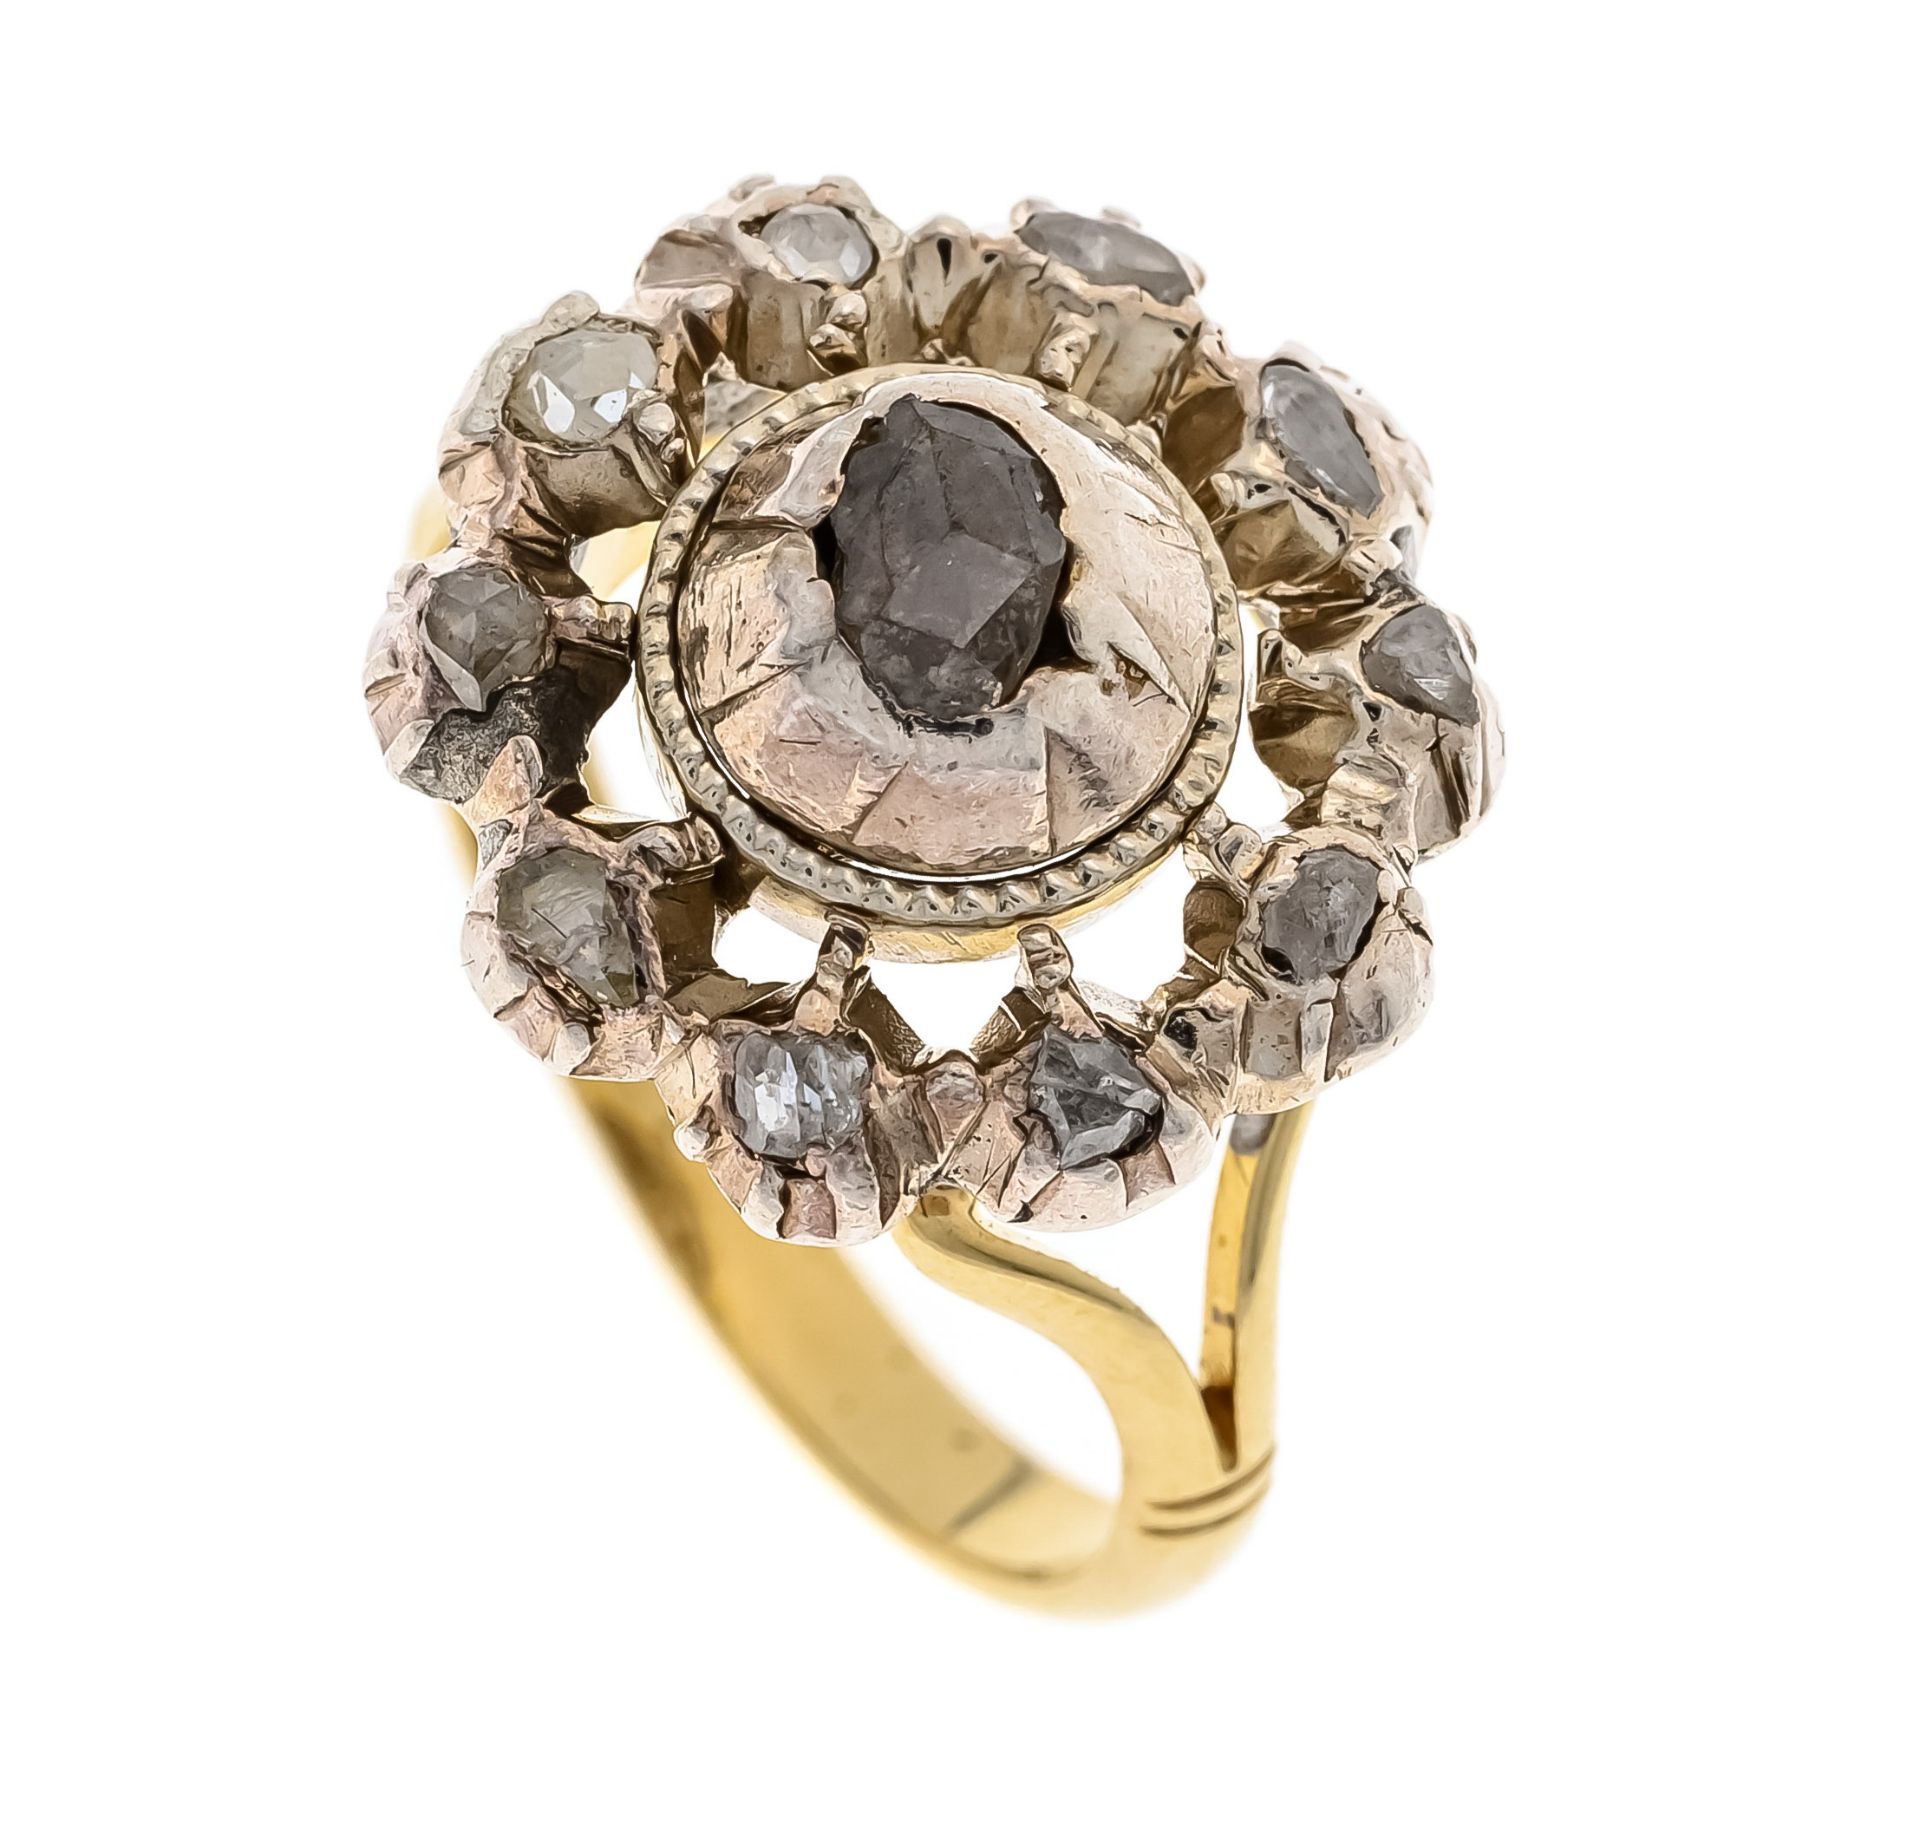 Diamantrosen-Ring GG 585/000 u